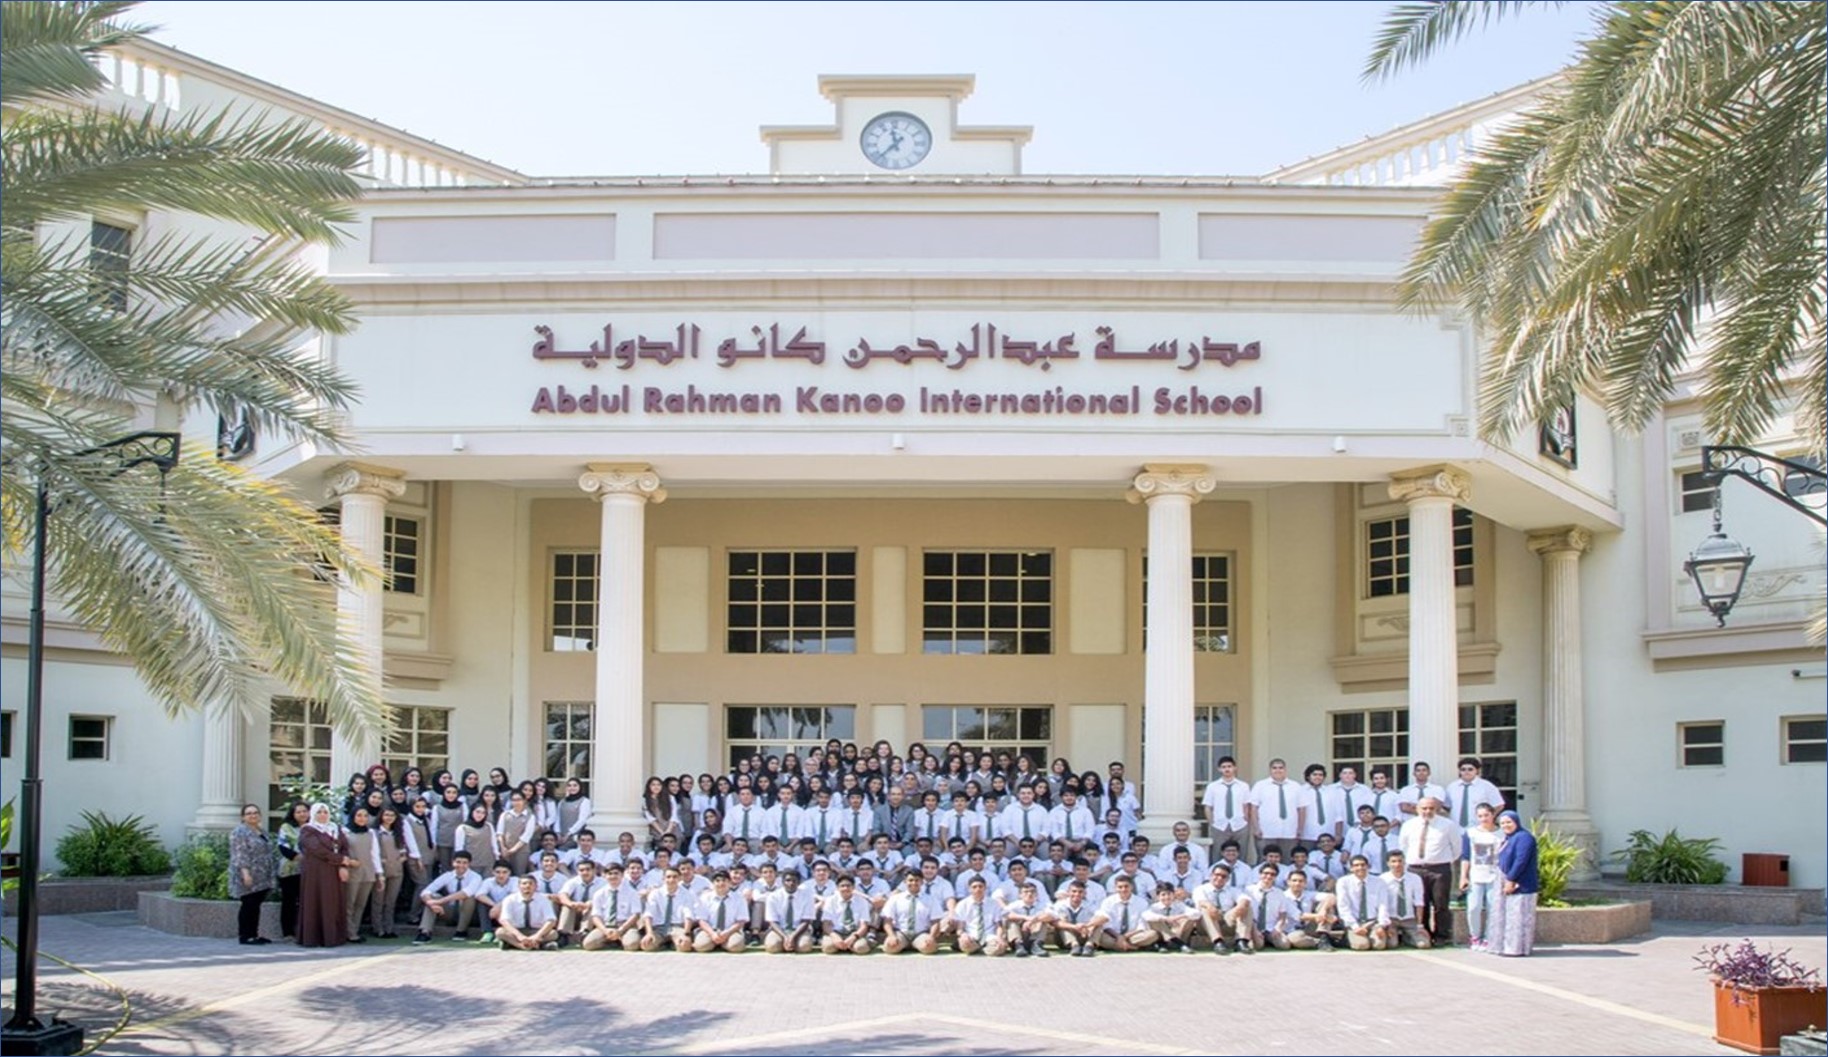 مدرسة عبدالرحمن كانو بالبحرين تقدم وظائف ادارية وتعليمية